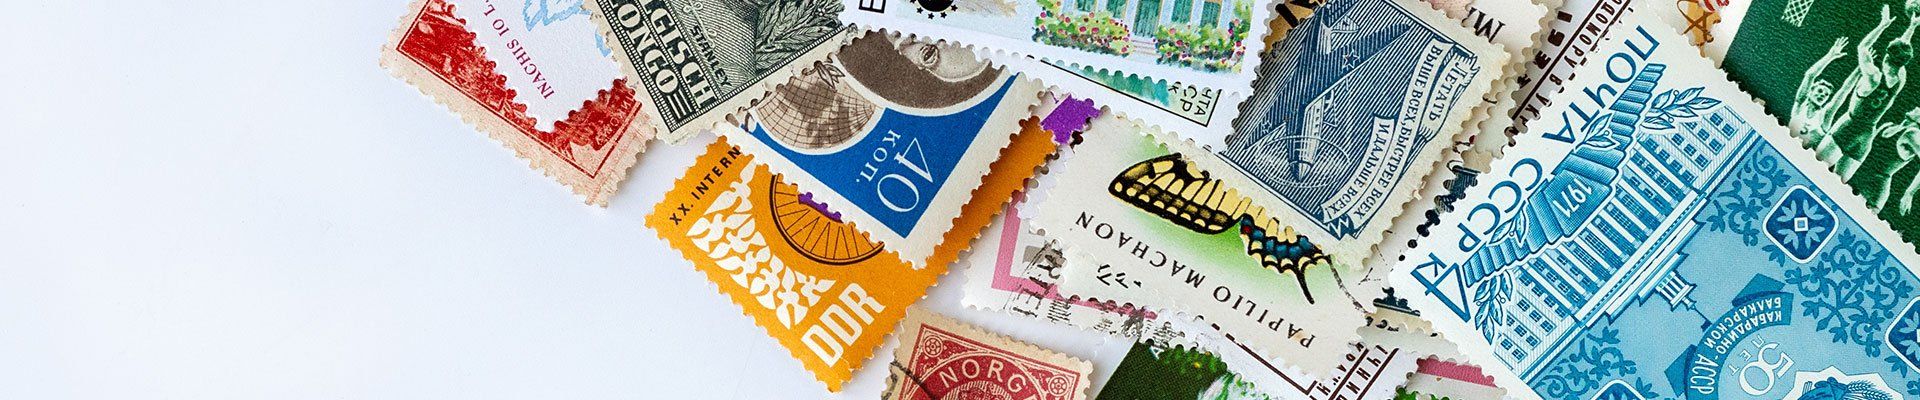 Belle collection de timbres entreposés sur un fond blanc